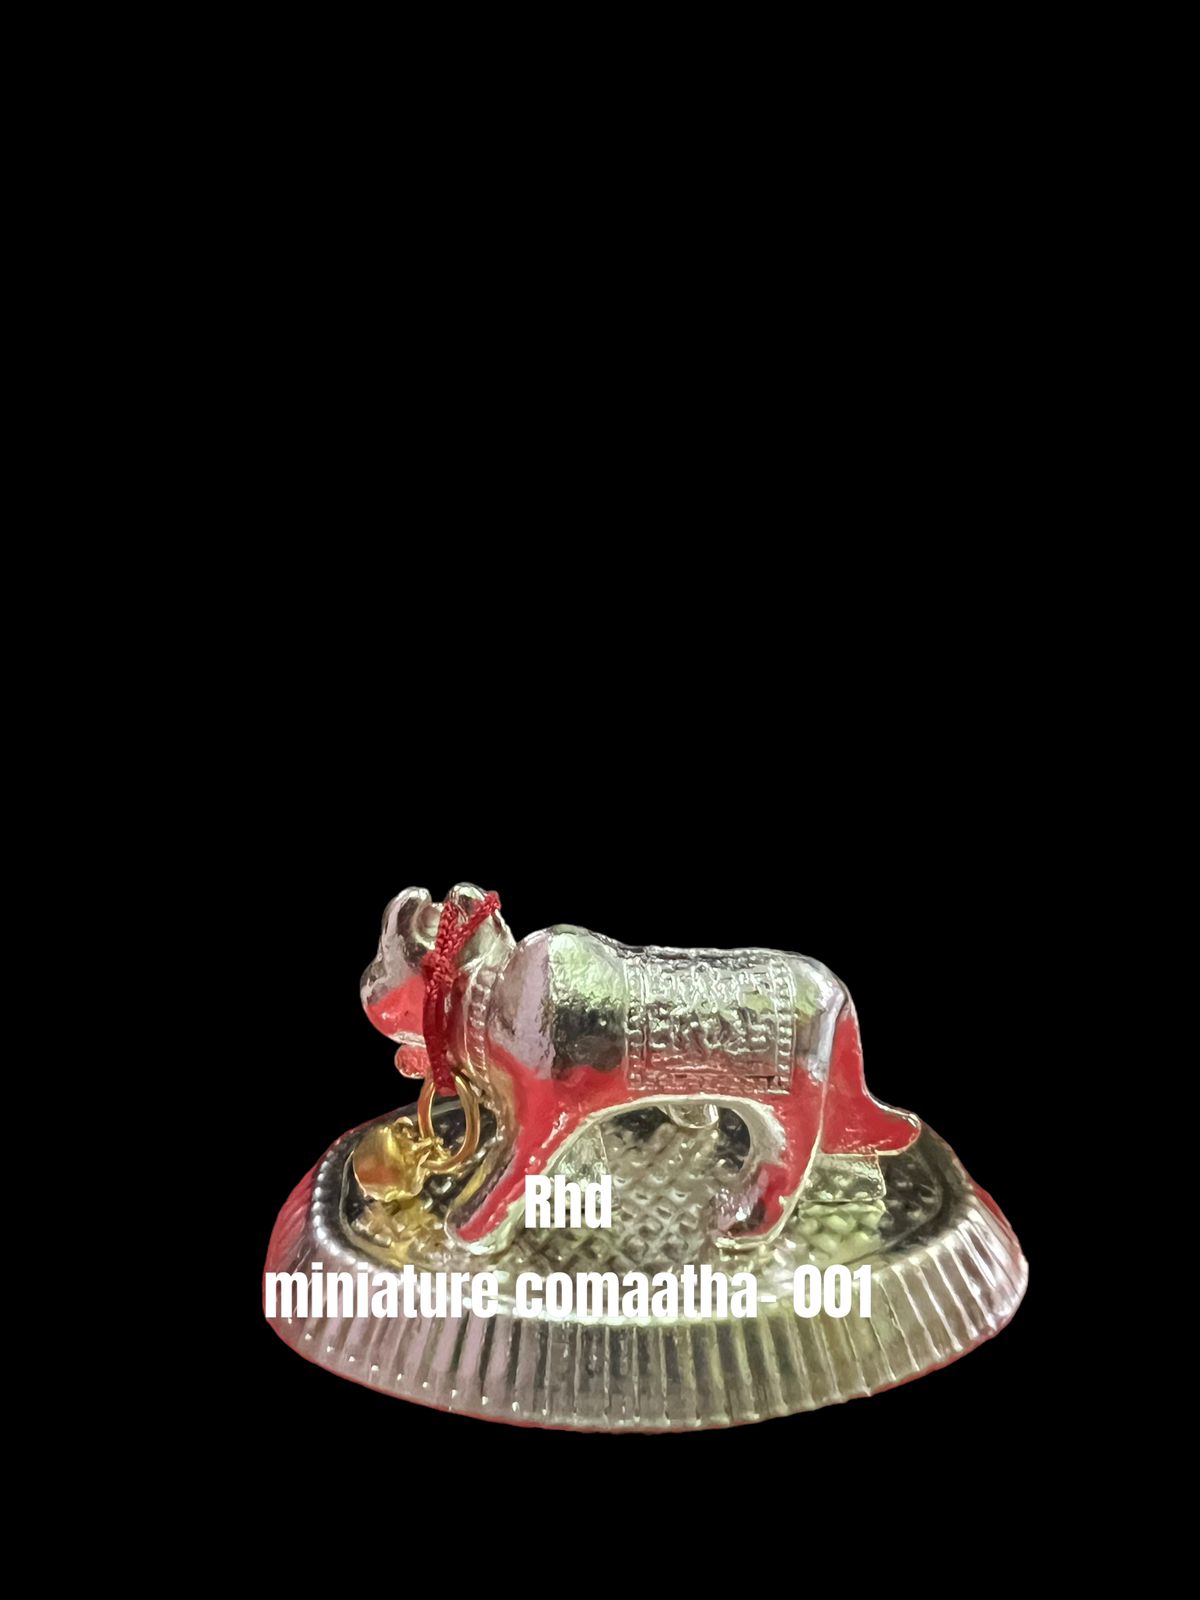 Rhd-miniature comatha